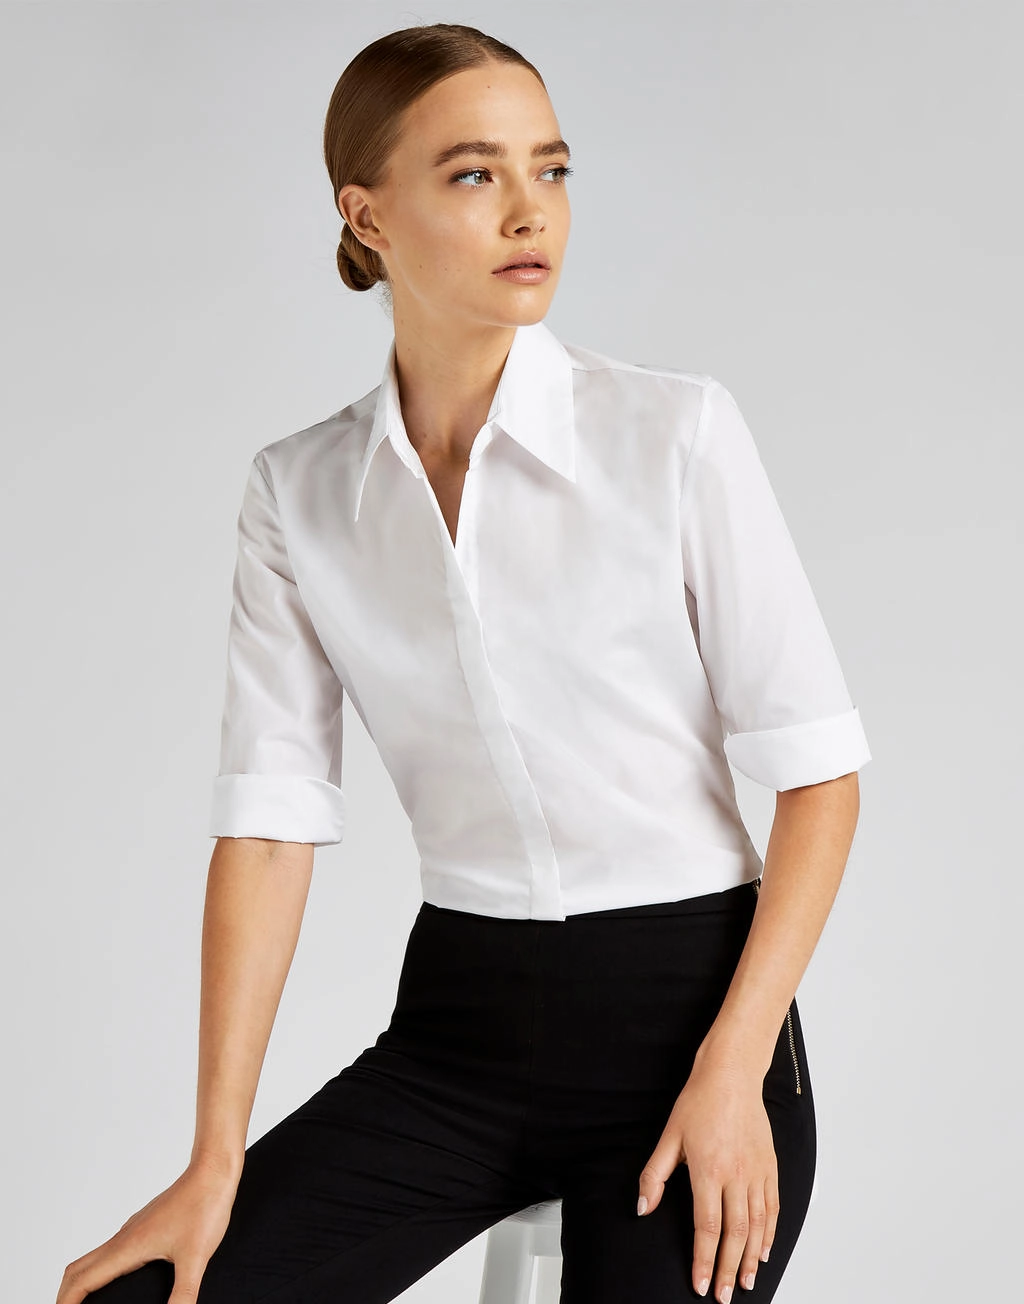 Women`s Tailored Fit Continental Blouse 3/4 Sleeve zum Besticken und Bedrucken mit Ihren Logo, Schriftzug oder Motiv.